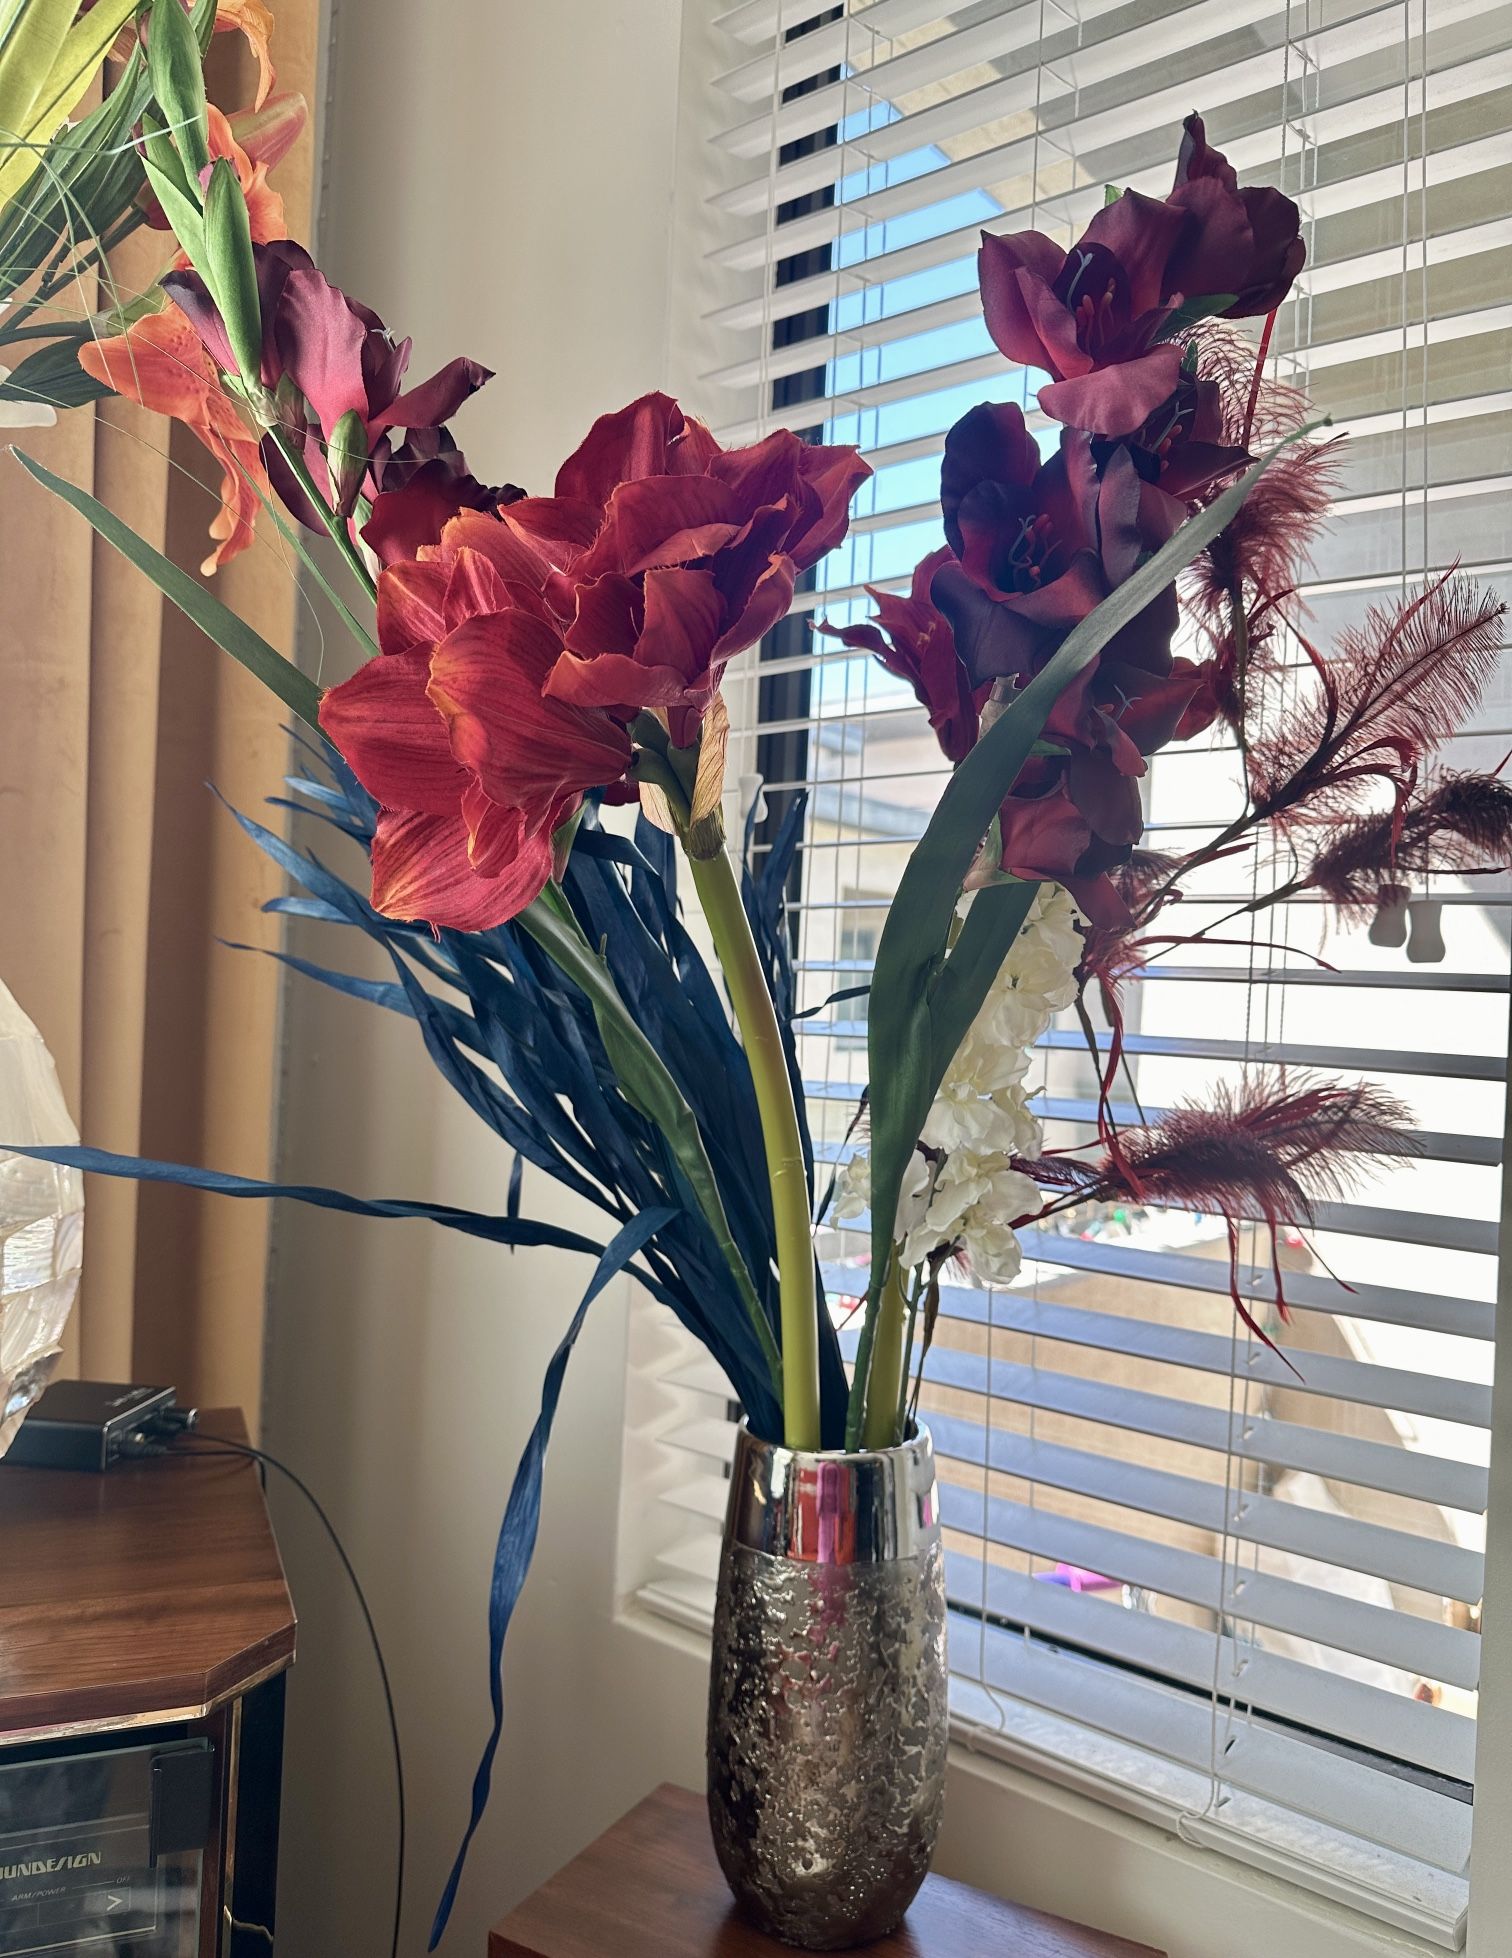 Vase & Tall Flowers 